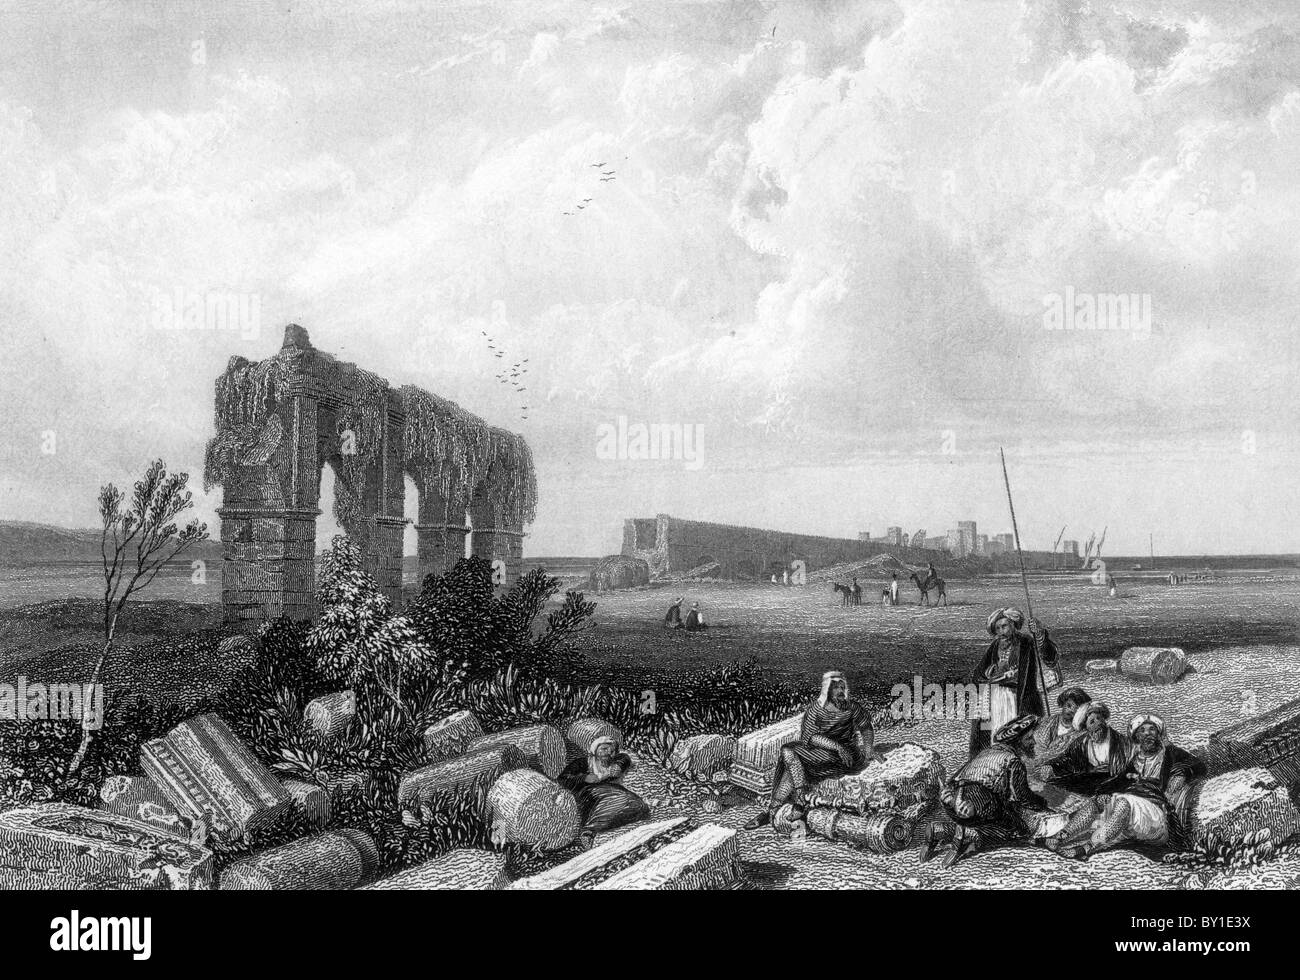 Les ruines de Tyr ; Paysage d'illustrations de la Bible 19e siècle Illustration noir et blanc ; Banque D'Images